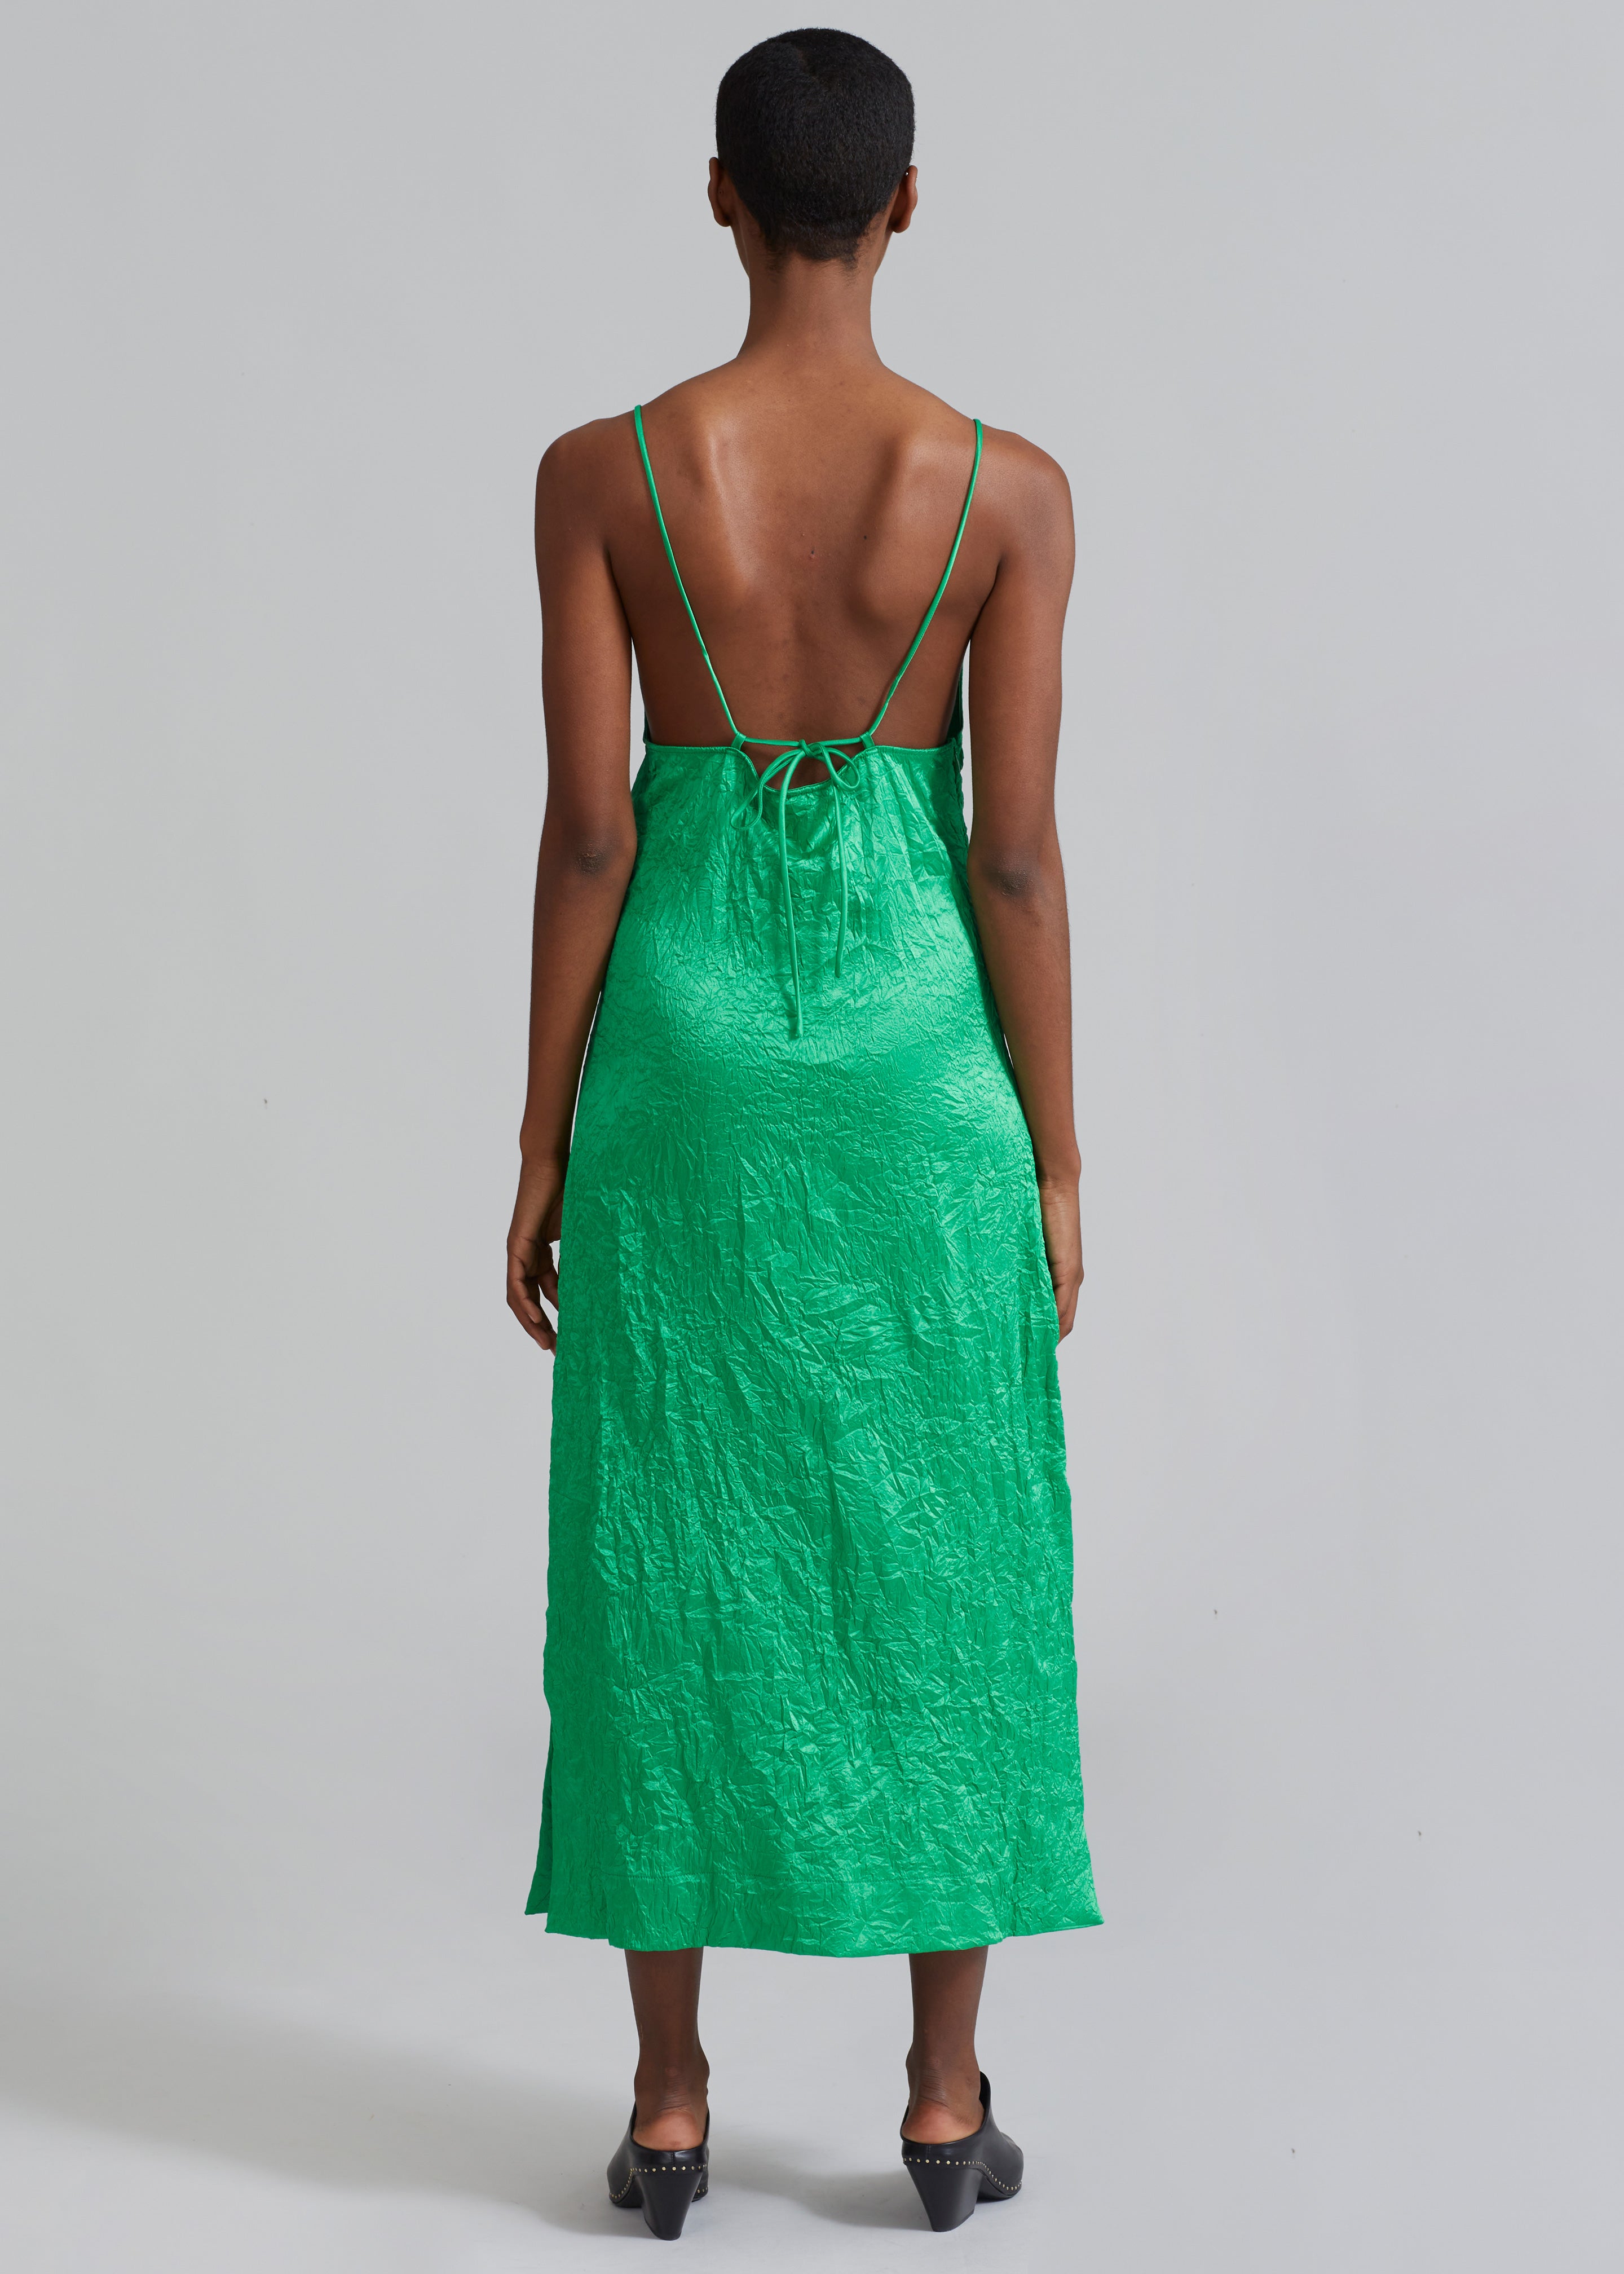 GANNI Crinkled Satin Slip Dress - Bright Green - 4